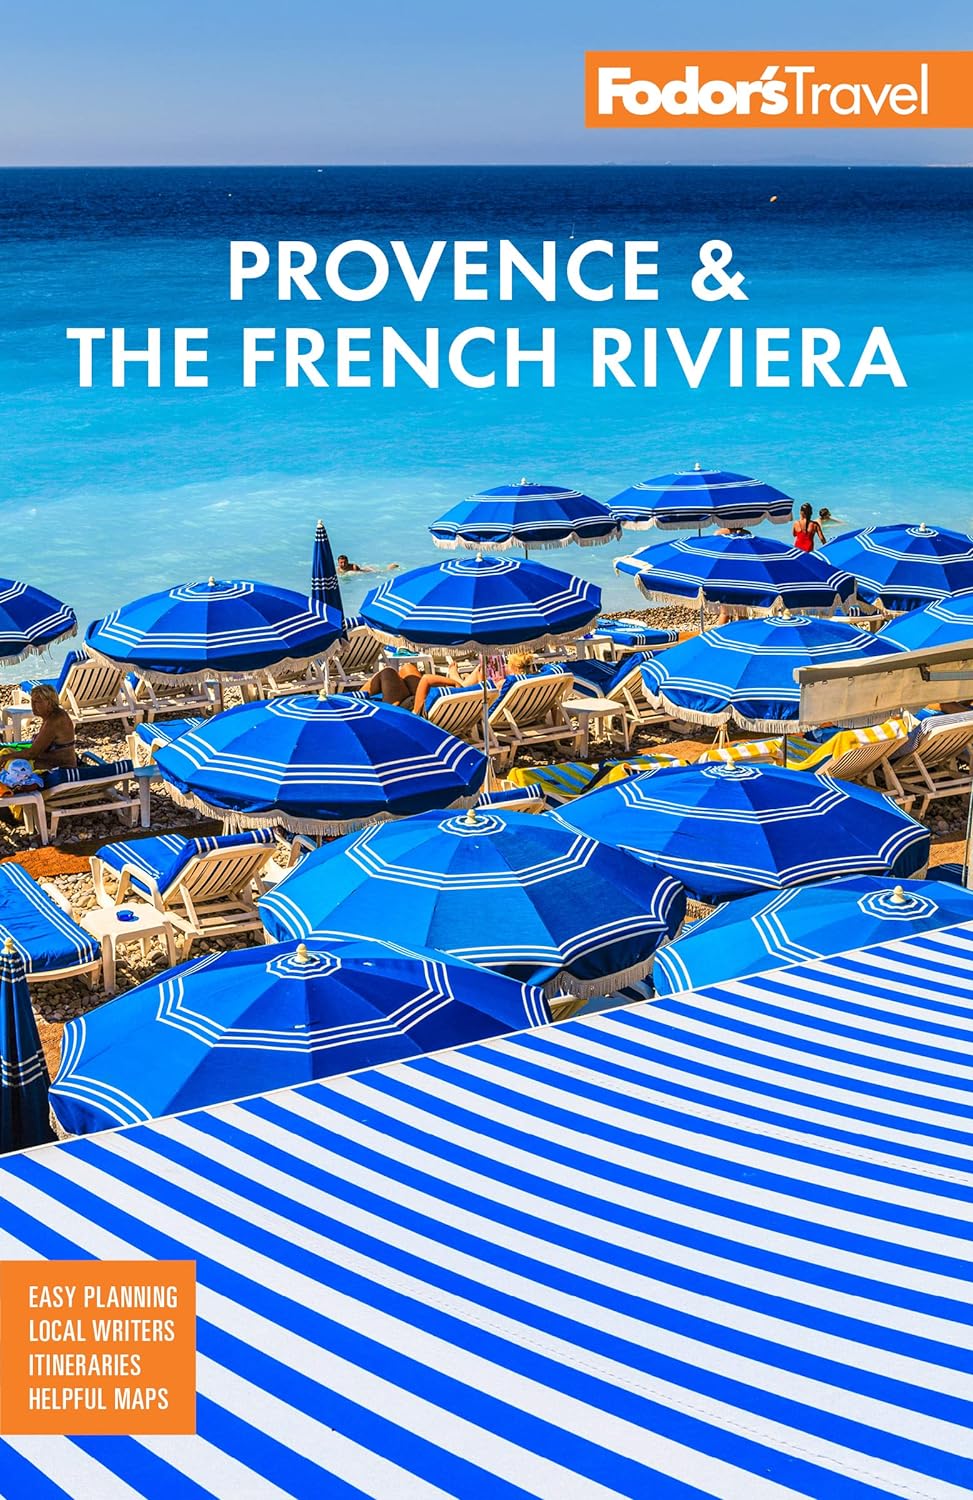 Fodor's Provence & the French Riviera 13e